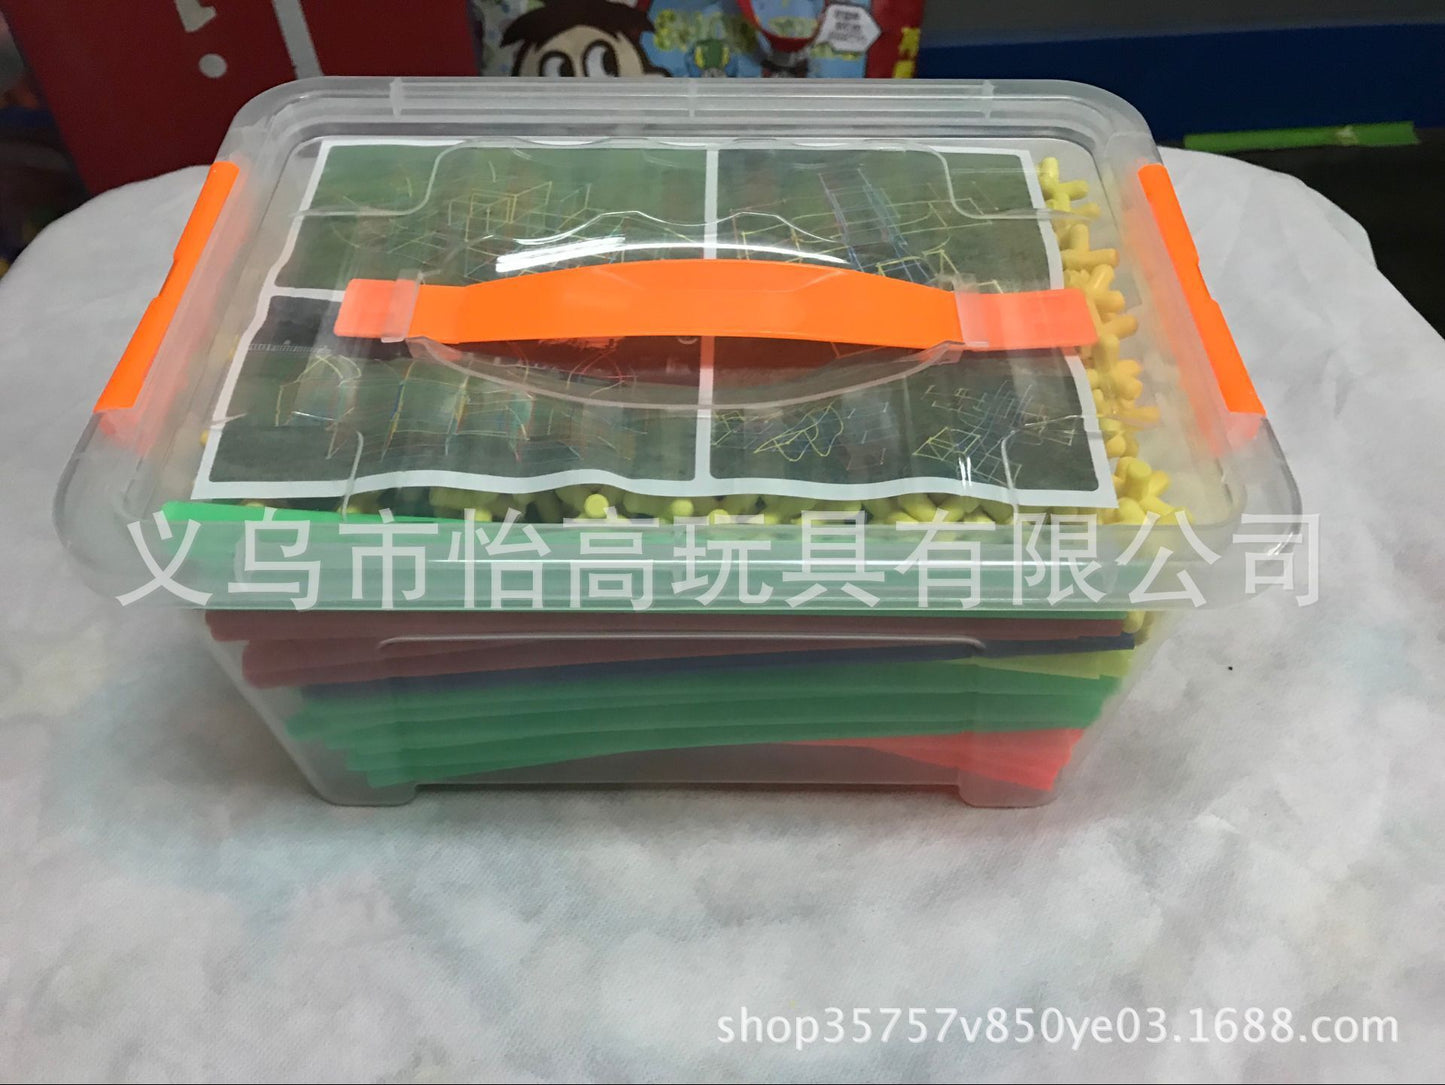 4D straw kindergarten spell inserting blocks children's educational toys